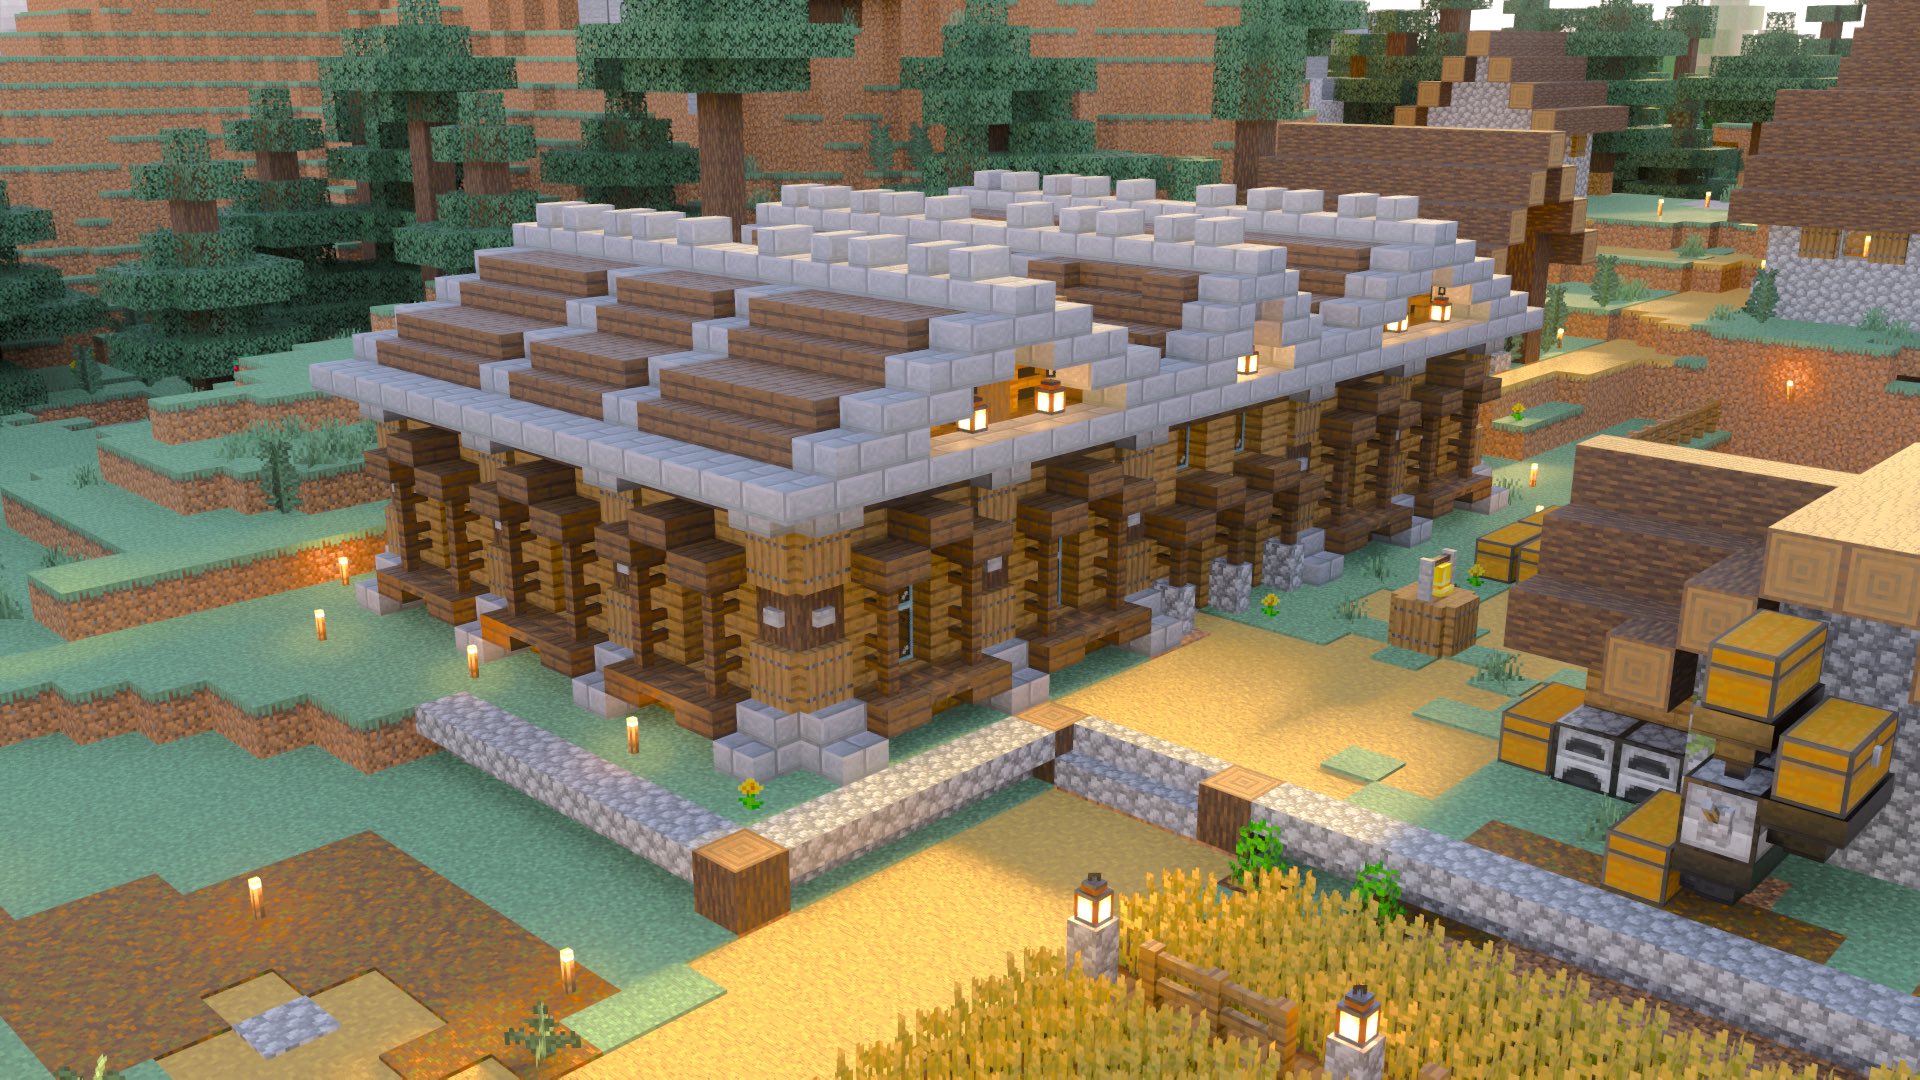 Twitter 上的 宝条みちる Minecraft Rt Kogumapro 今日は村人の交易所を作ってみました マイクラ Minecraft建築コミュ マインクラフト Minecraft サバイバル建築クラブ T Co 32yycqjux7 Twitter